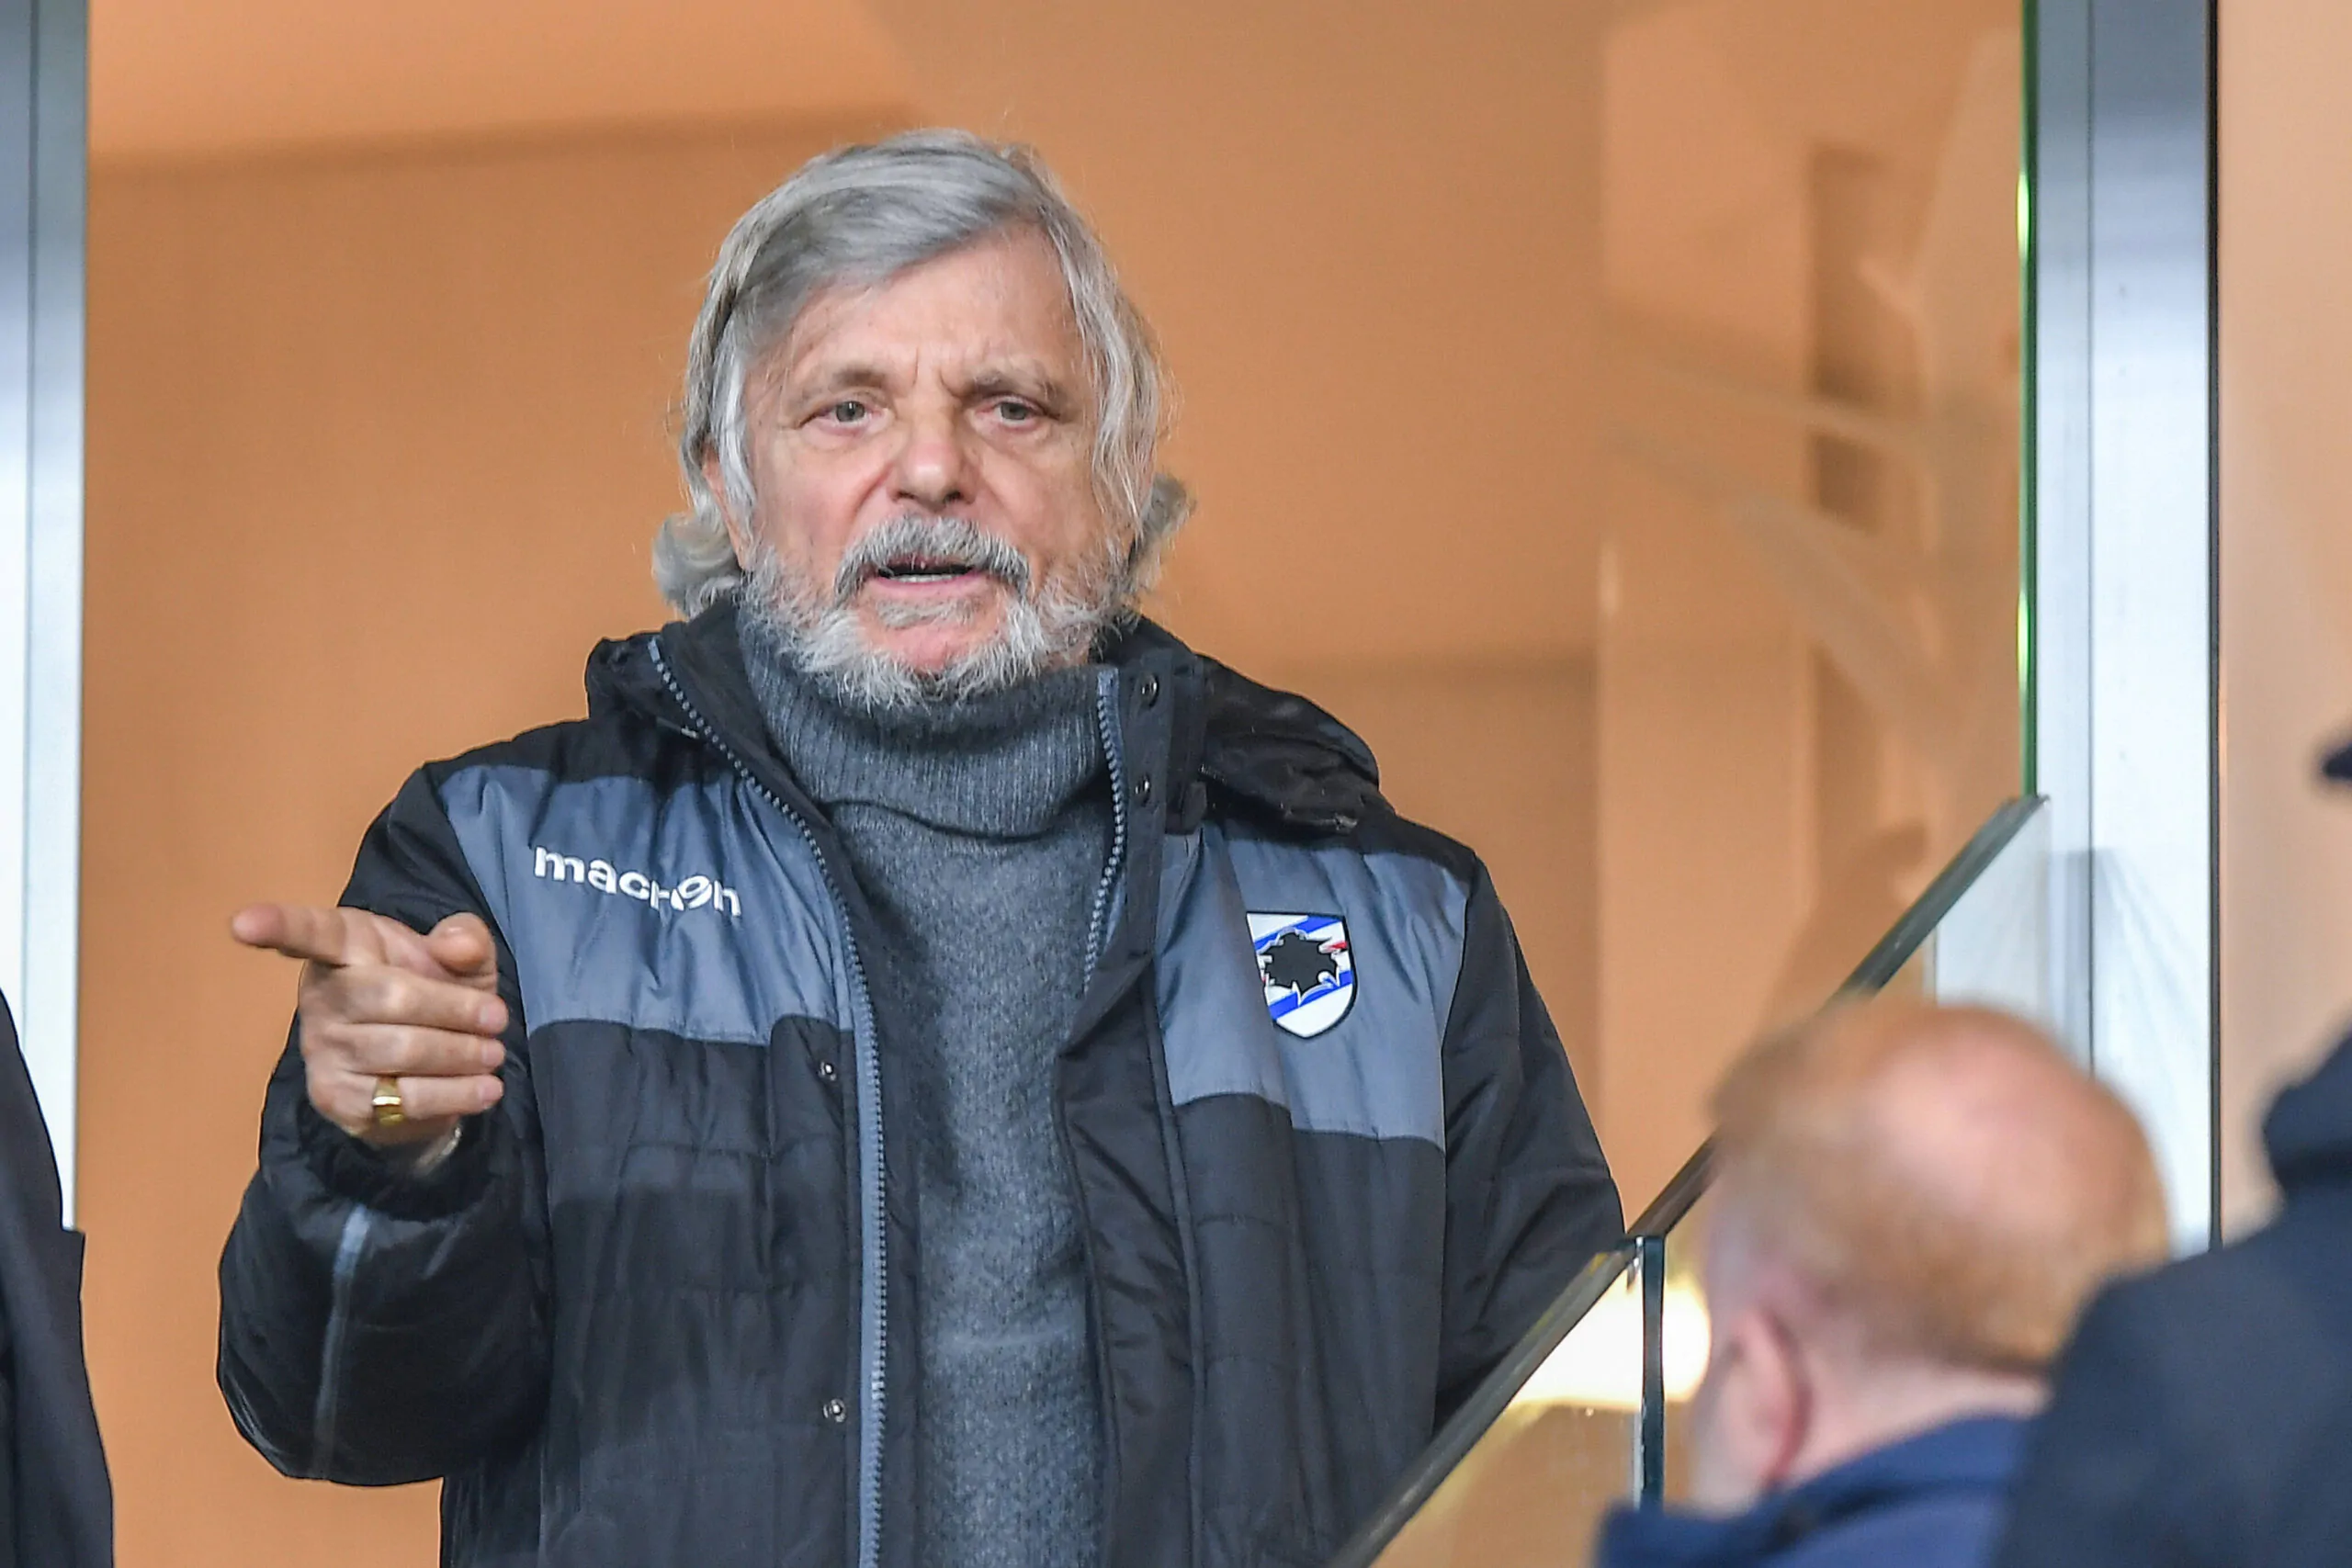 Caos Sampdoria, Ferrero non ci sta: “Non è colpa mia”, poi il retroscena sulla cessione